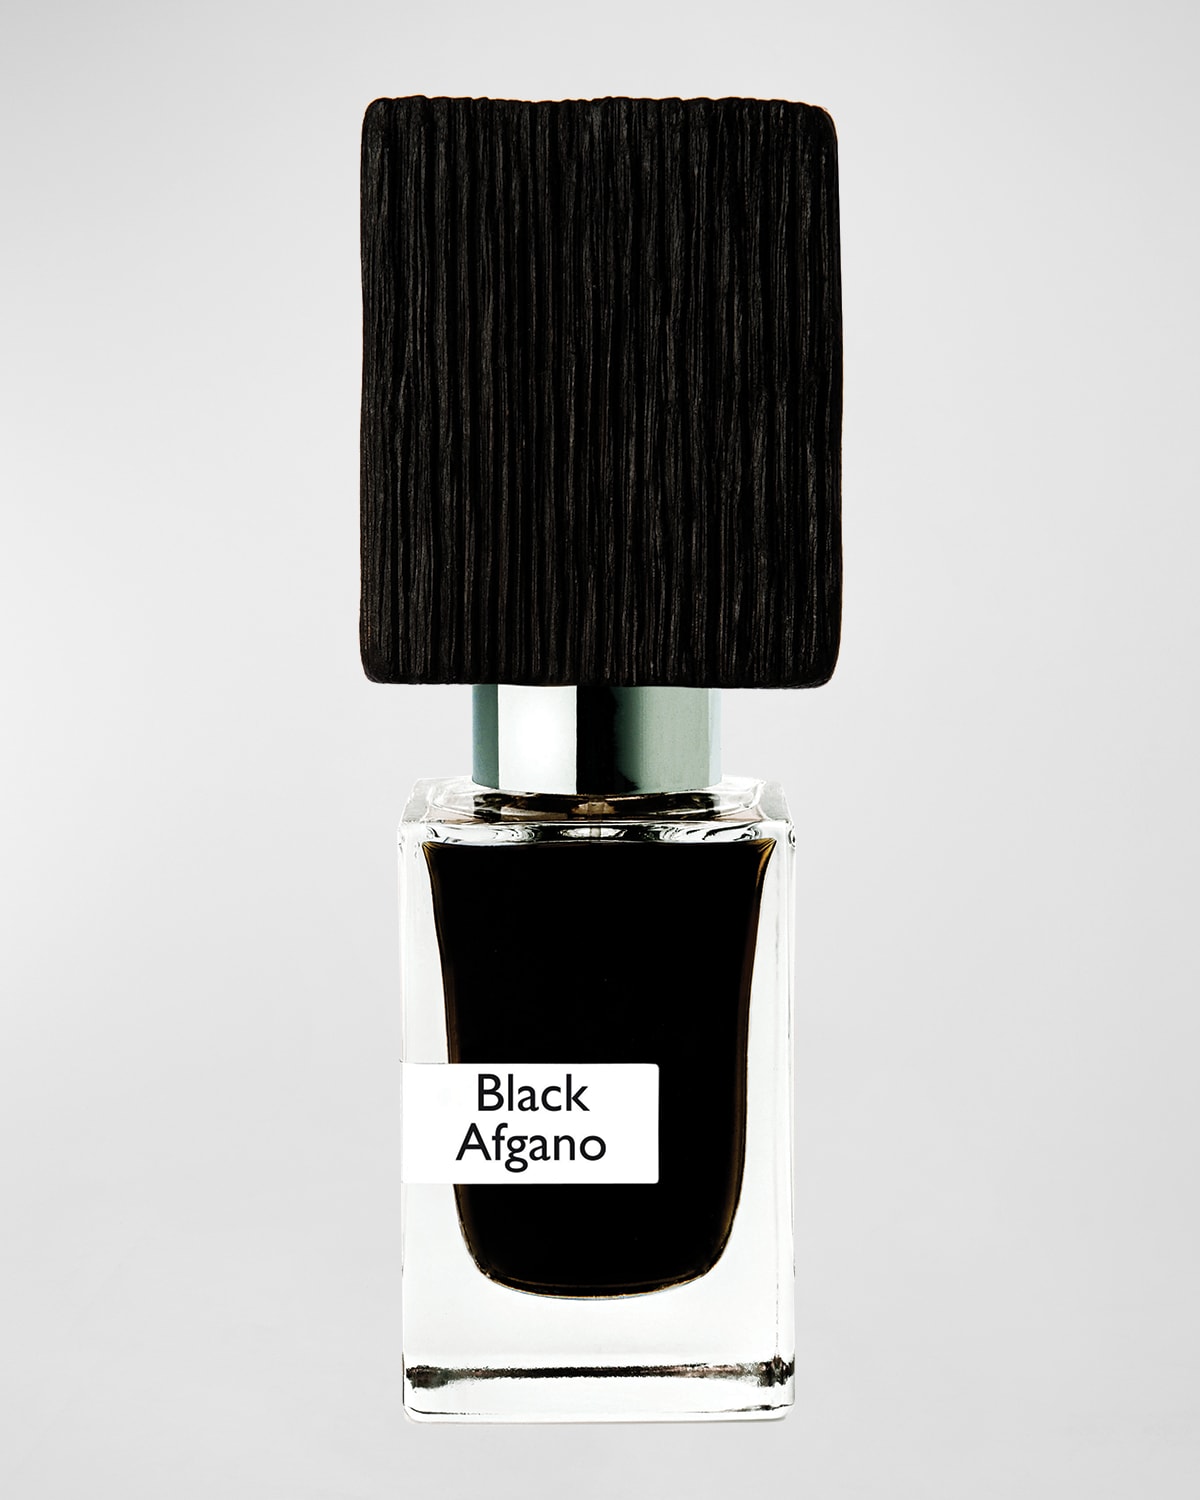 1 oz. Black Afgano Extrait de Parfum